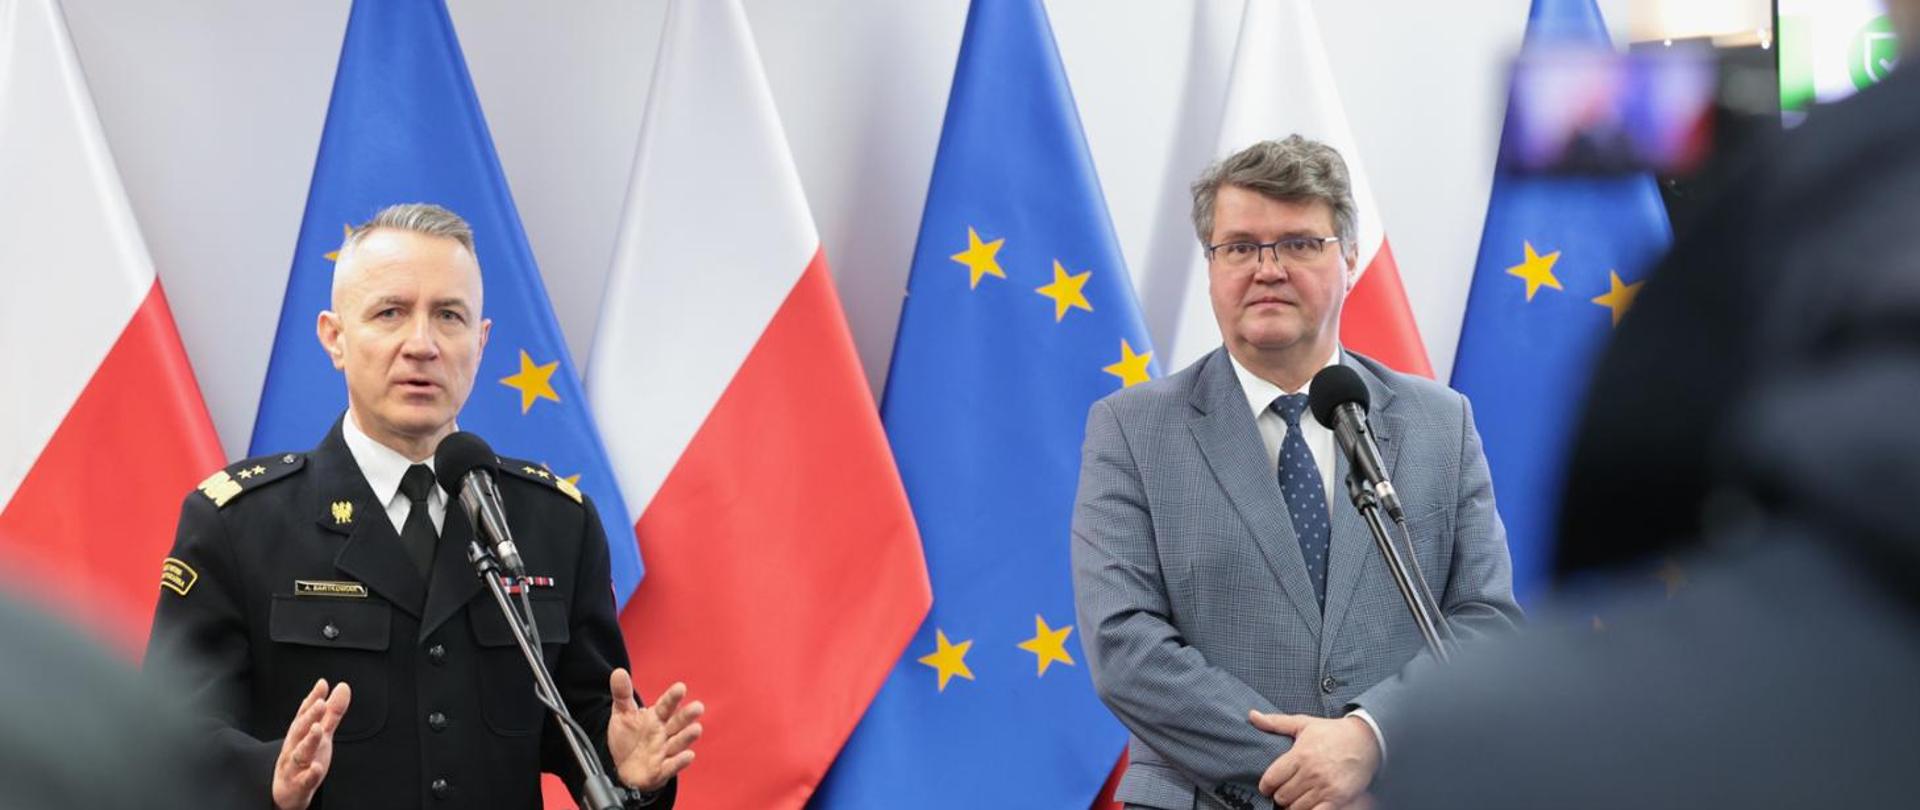 Na zdjęciu widzimy dwóch mężczyzn stojących przed mikrofonami na tle flag Polski i Uni Europejskiej. Po lewej generał PSP w mundurze granatowym, po prawej minister w garniturze szarym.